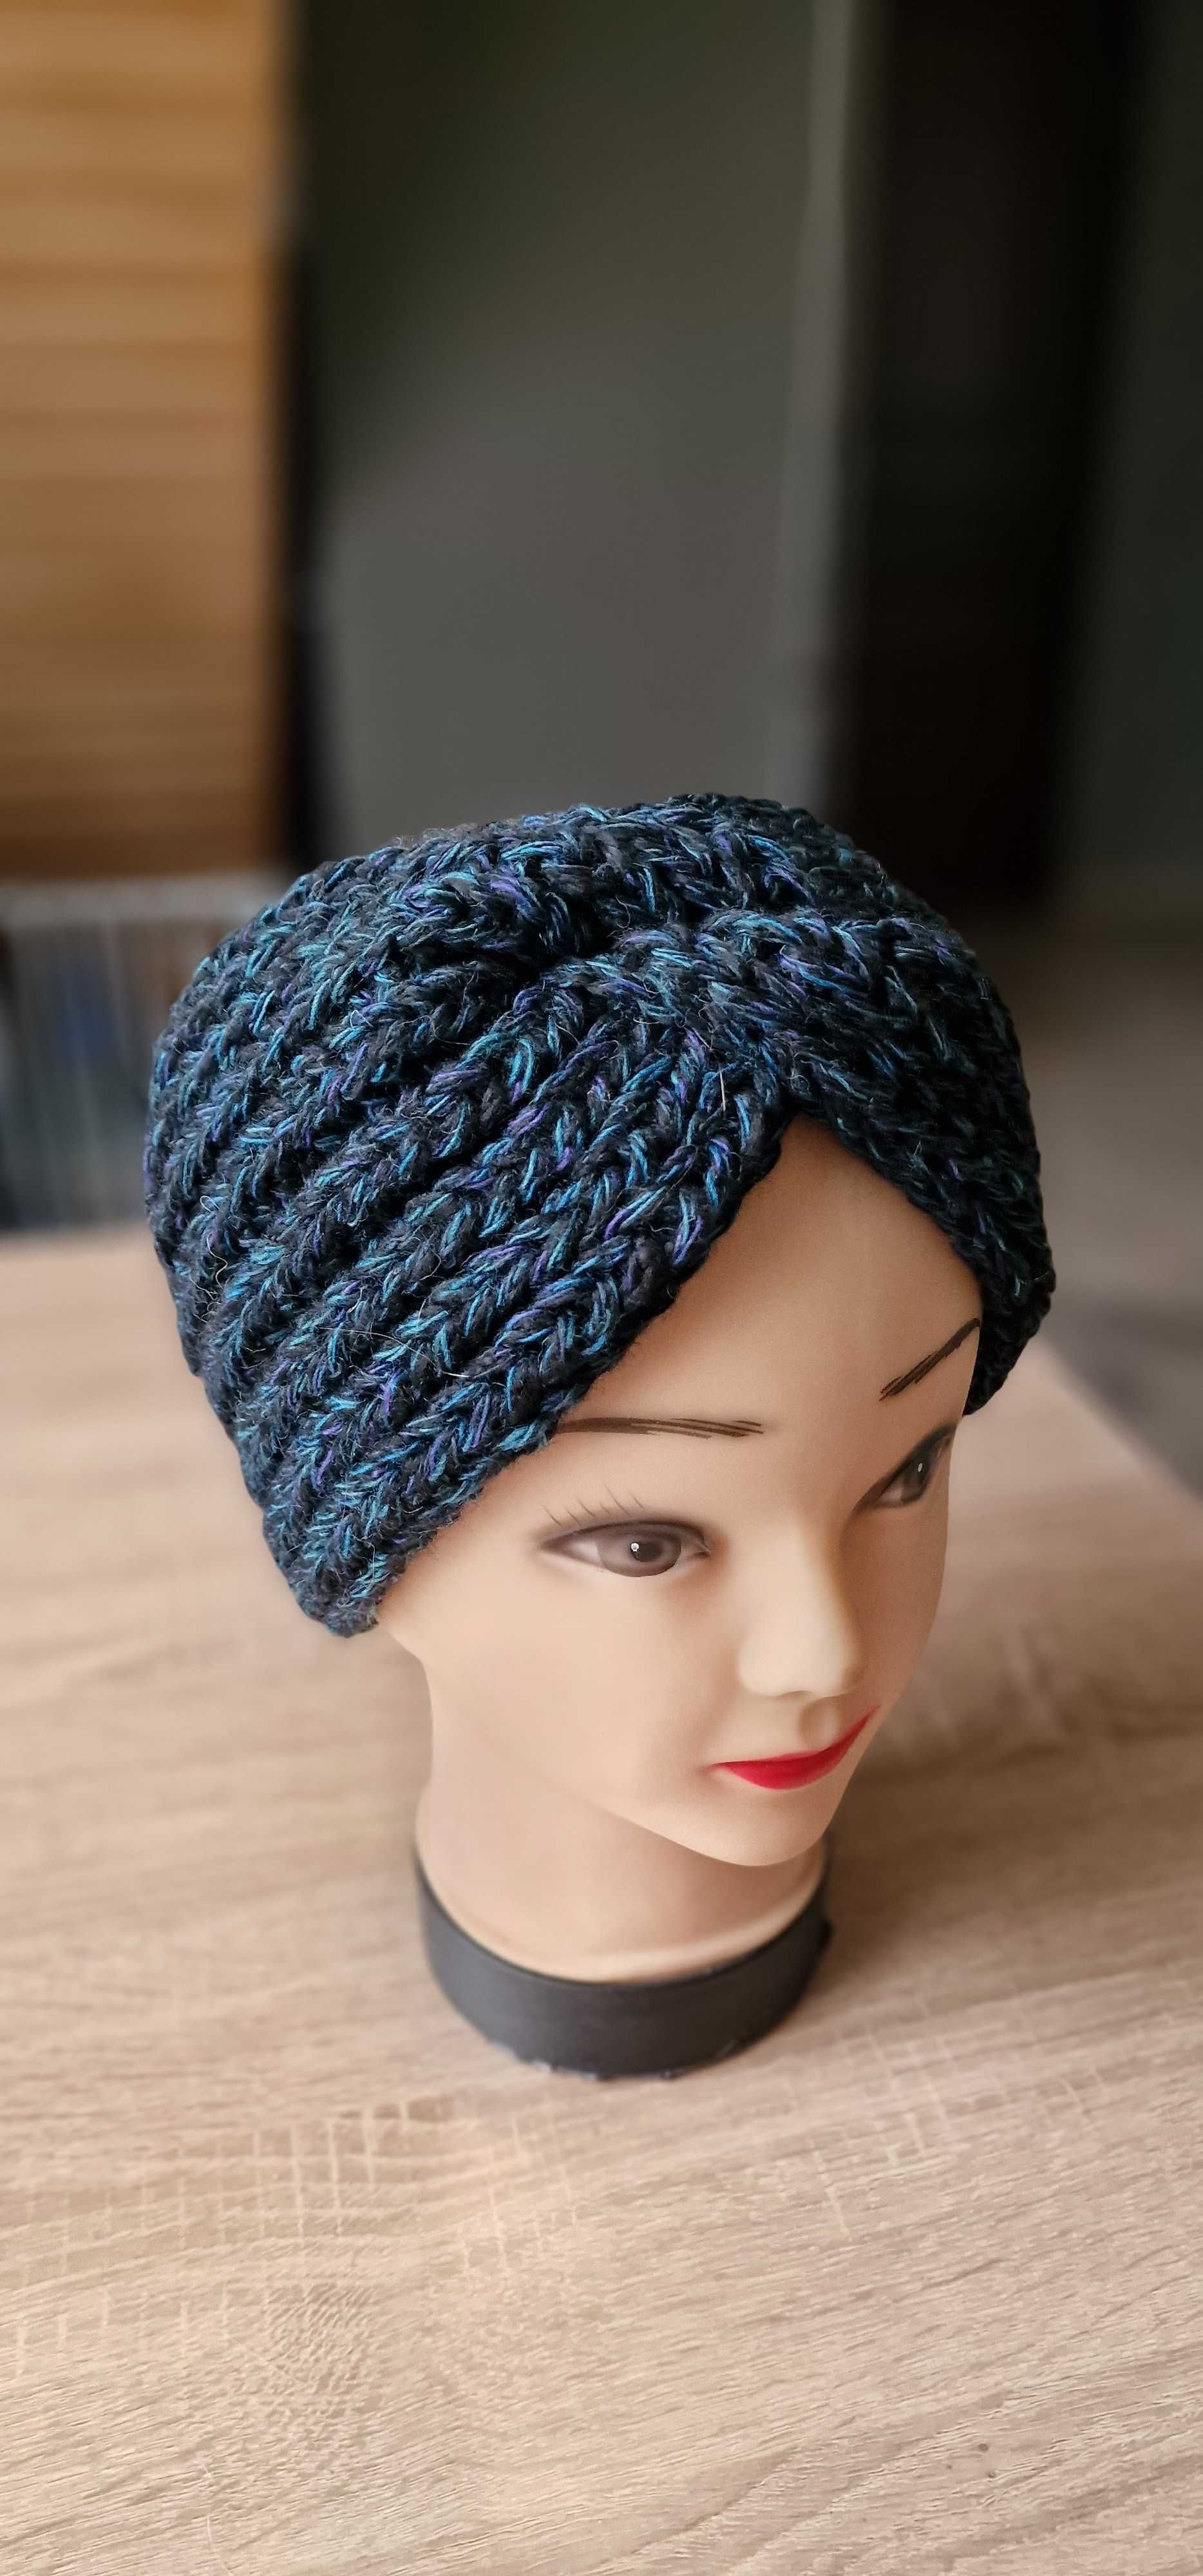 Теплые повязки на голову для женщин купить в интернет-магазине WoolSoft: цены, фото